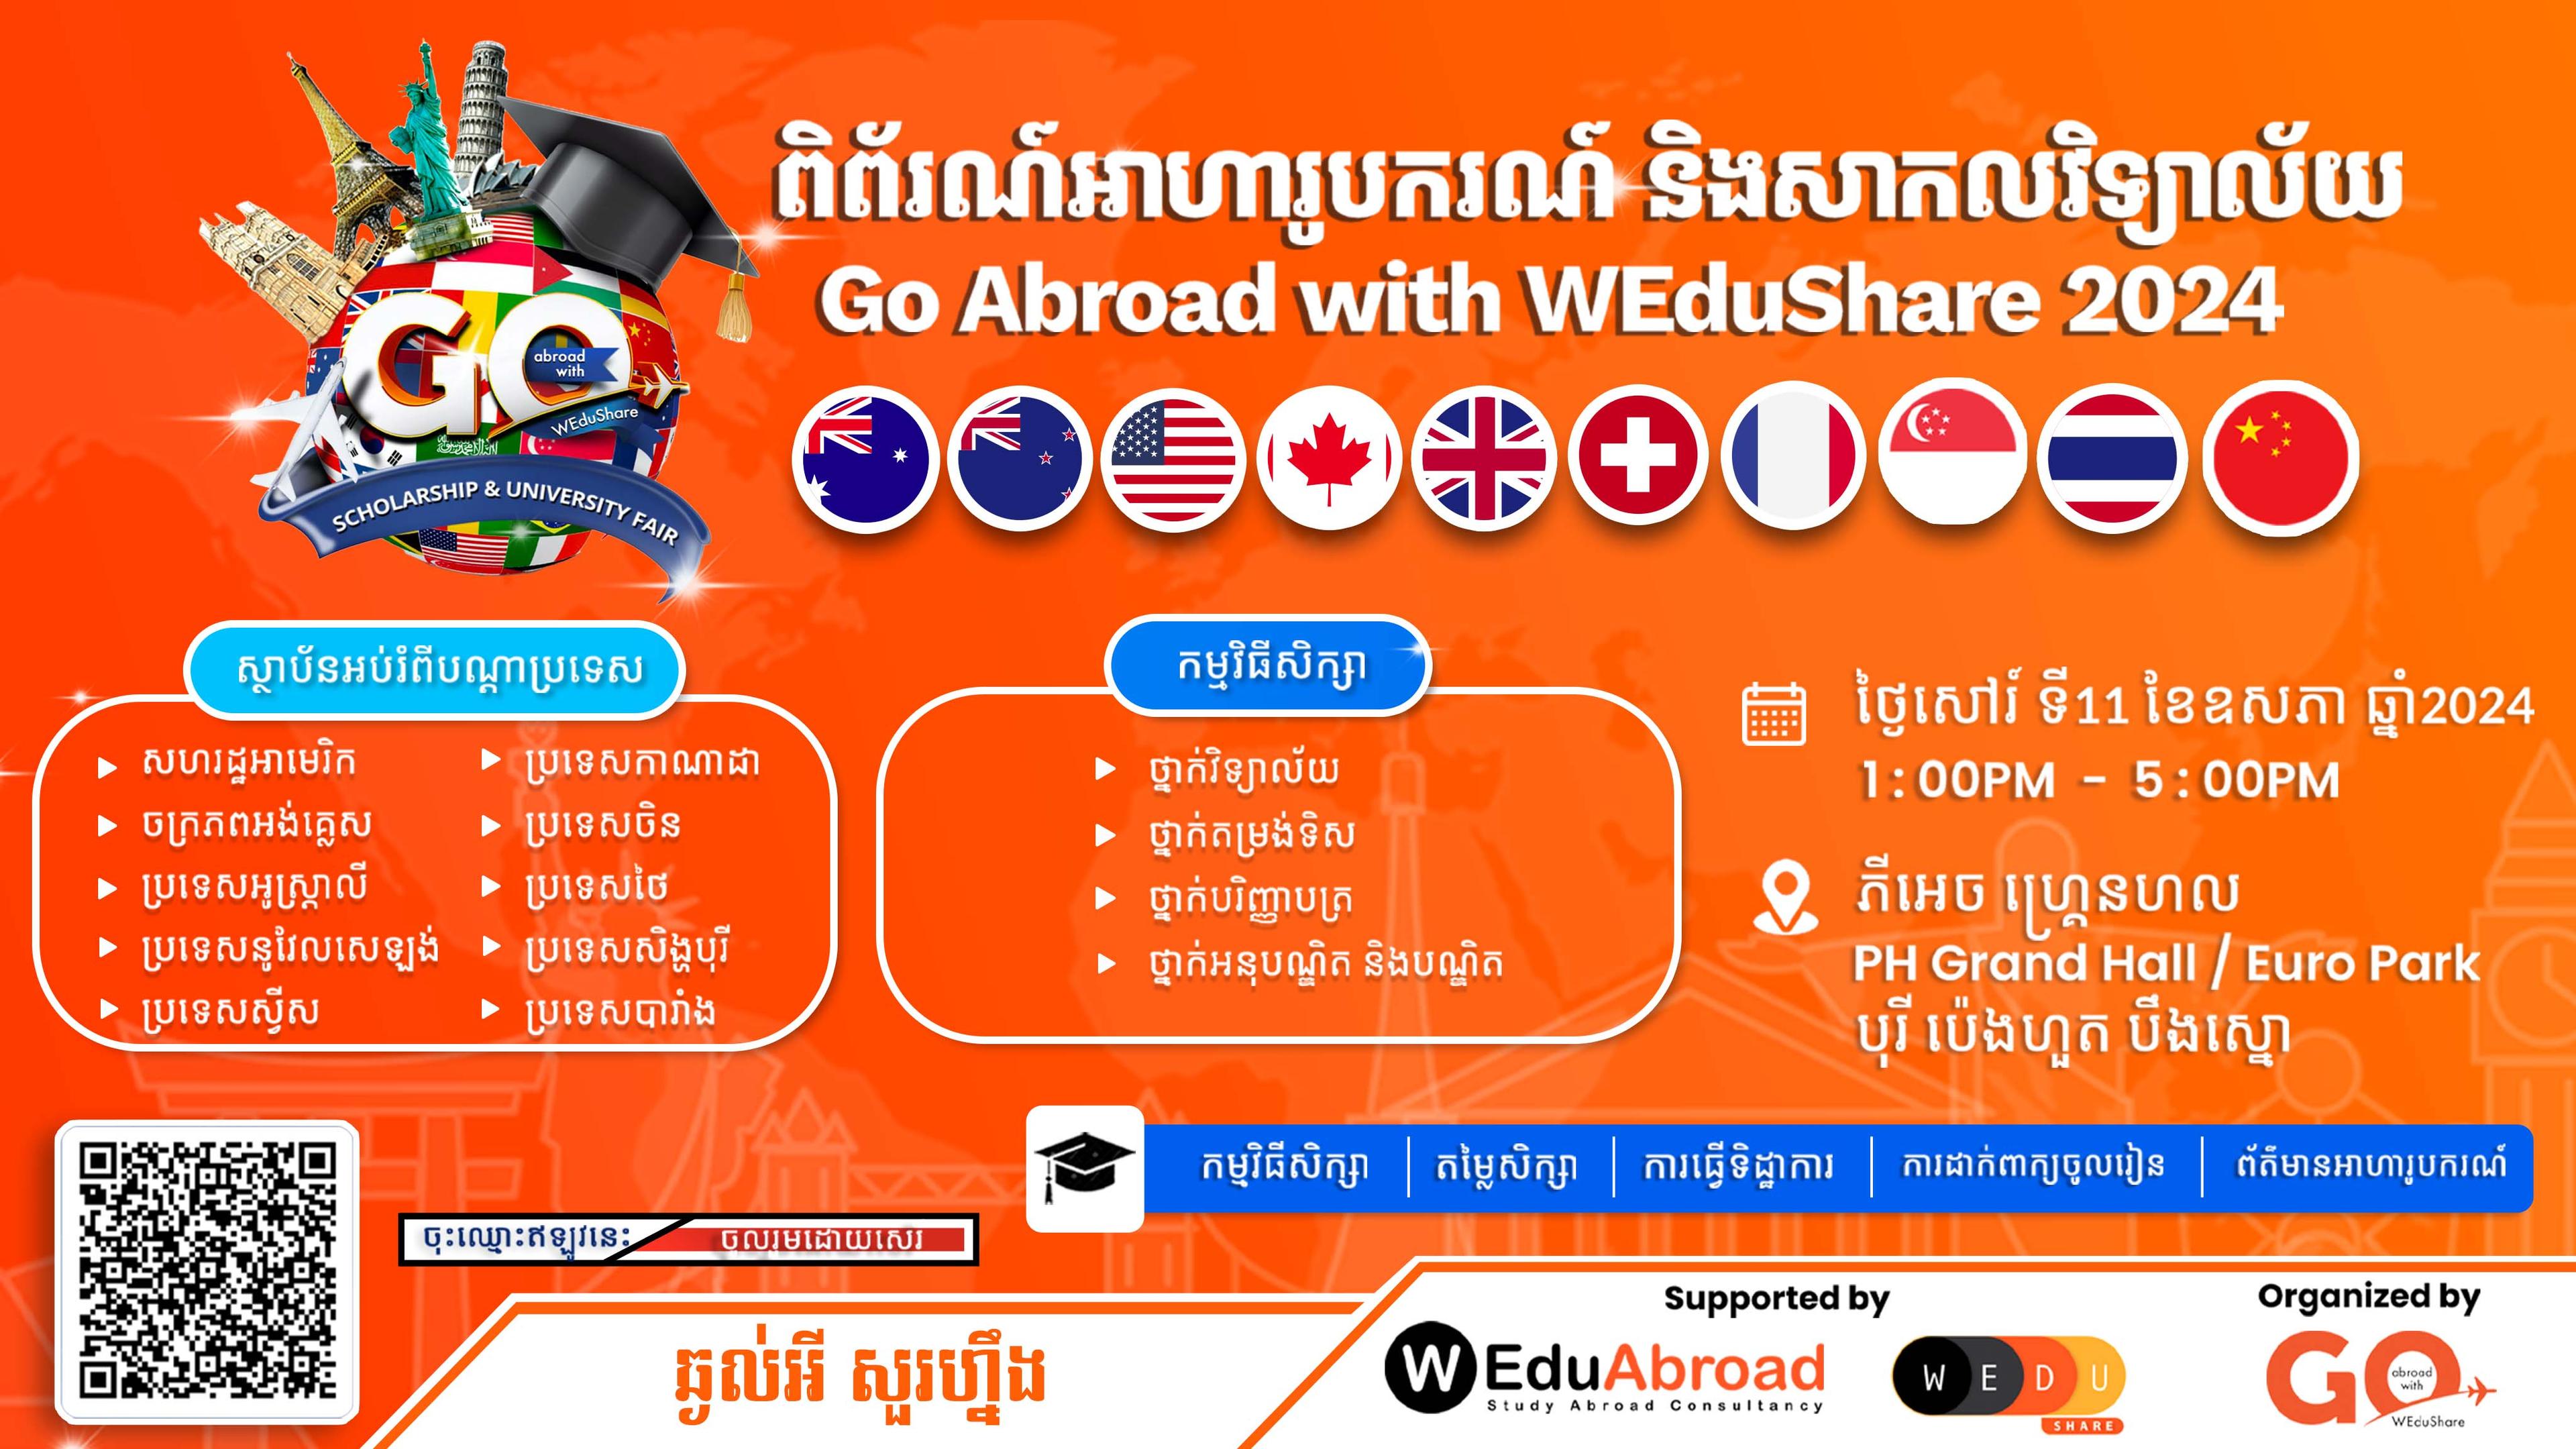 ពិព័រណ៍អាហារូបករណ៍ និងសាកលវិទ្យាល័យ - Go Abroad with WEduShare 2024 (GAW 2K24)